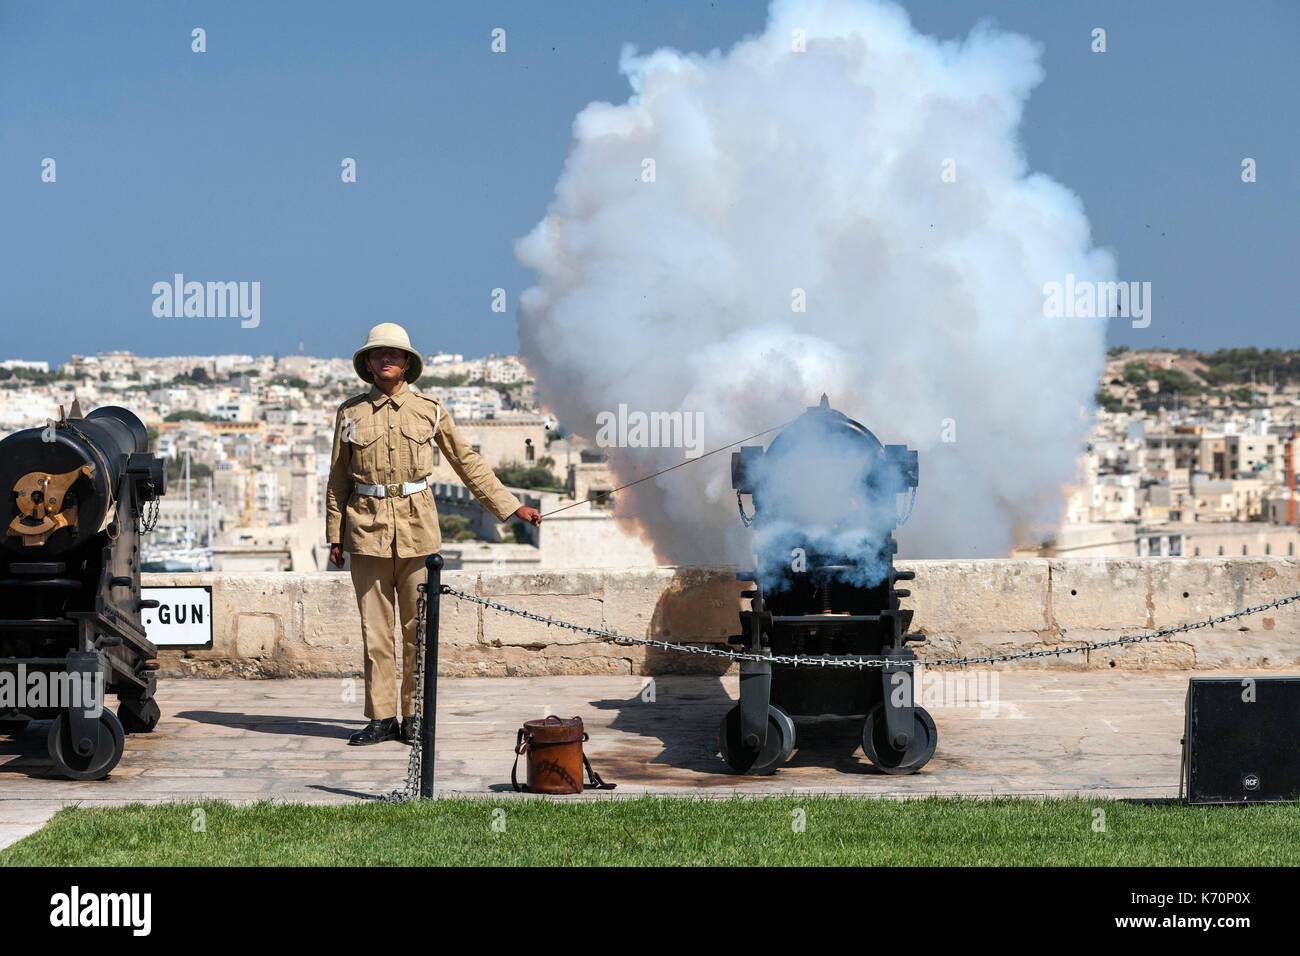 Un giovane gunner incendi per Malta il cannone di mezzogiorno per contrassegnare l'ora di mezzogiorno. Il cannone di mezzogiorno salute è una vecchia tradizione navale che re-è stato istituito nel 2004 e OC Foto Stock